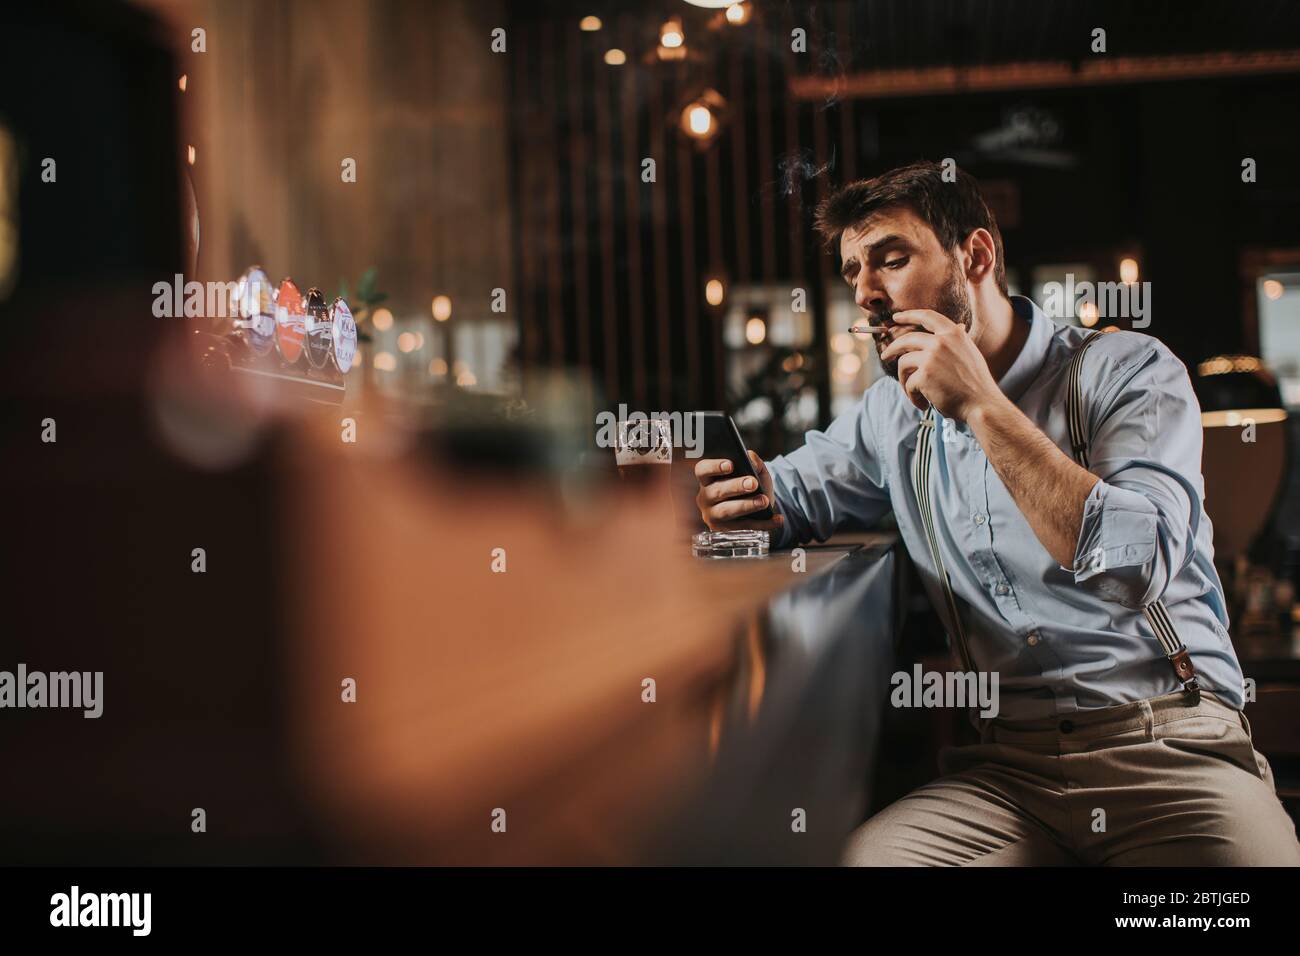 Un jeune homme boit de la bière, fume de la cigarette et utilise le téléphone portable au pub Banque D'Images